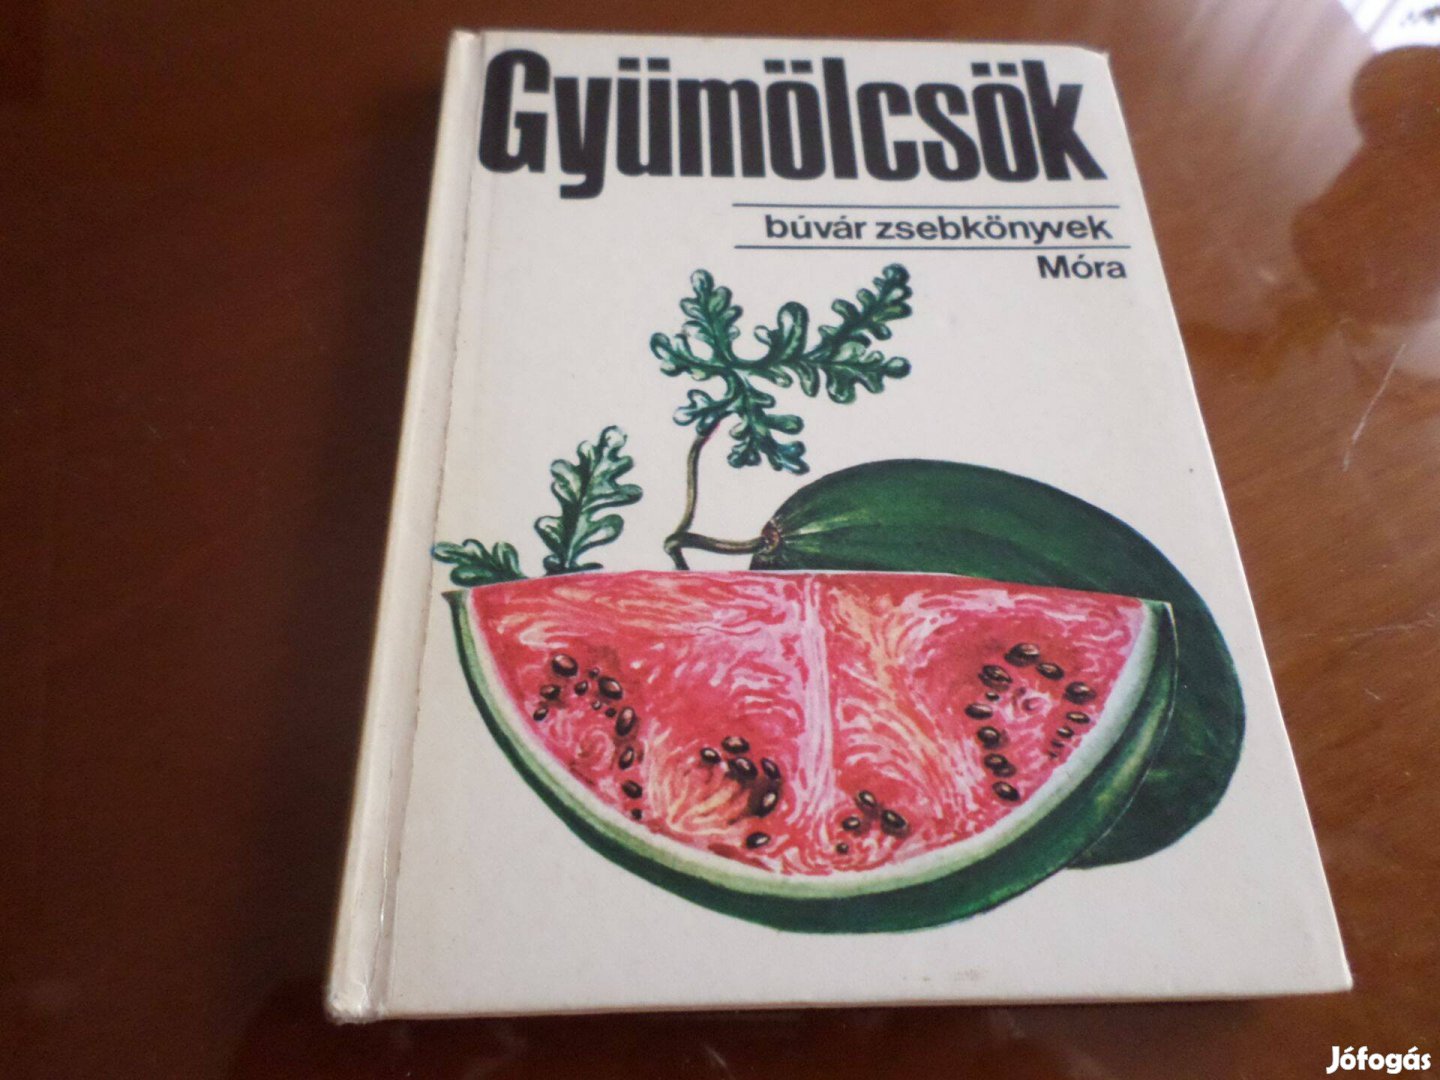 Búvár zsebkönyv, Búvár zsebkönyvek: Gyümölcsök, 1983 Gyermekkönyv